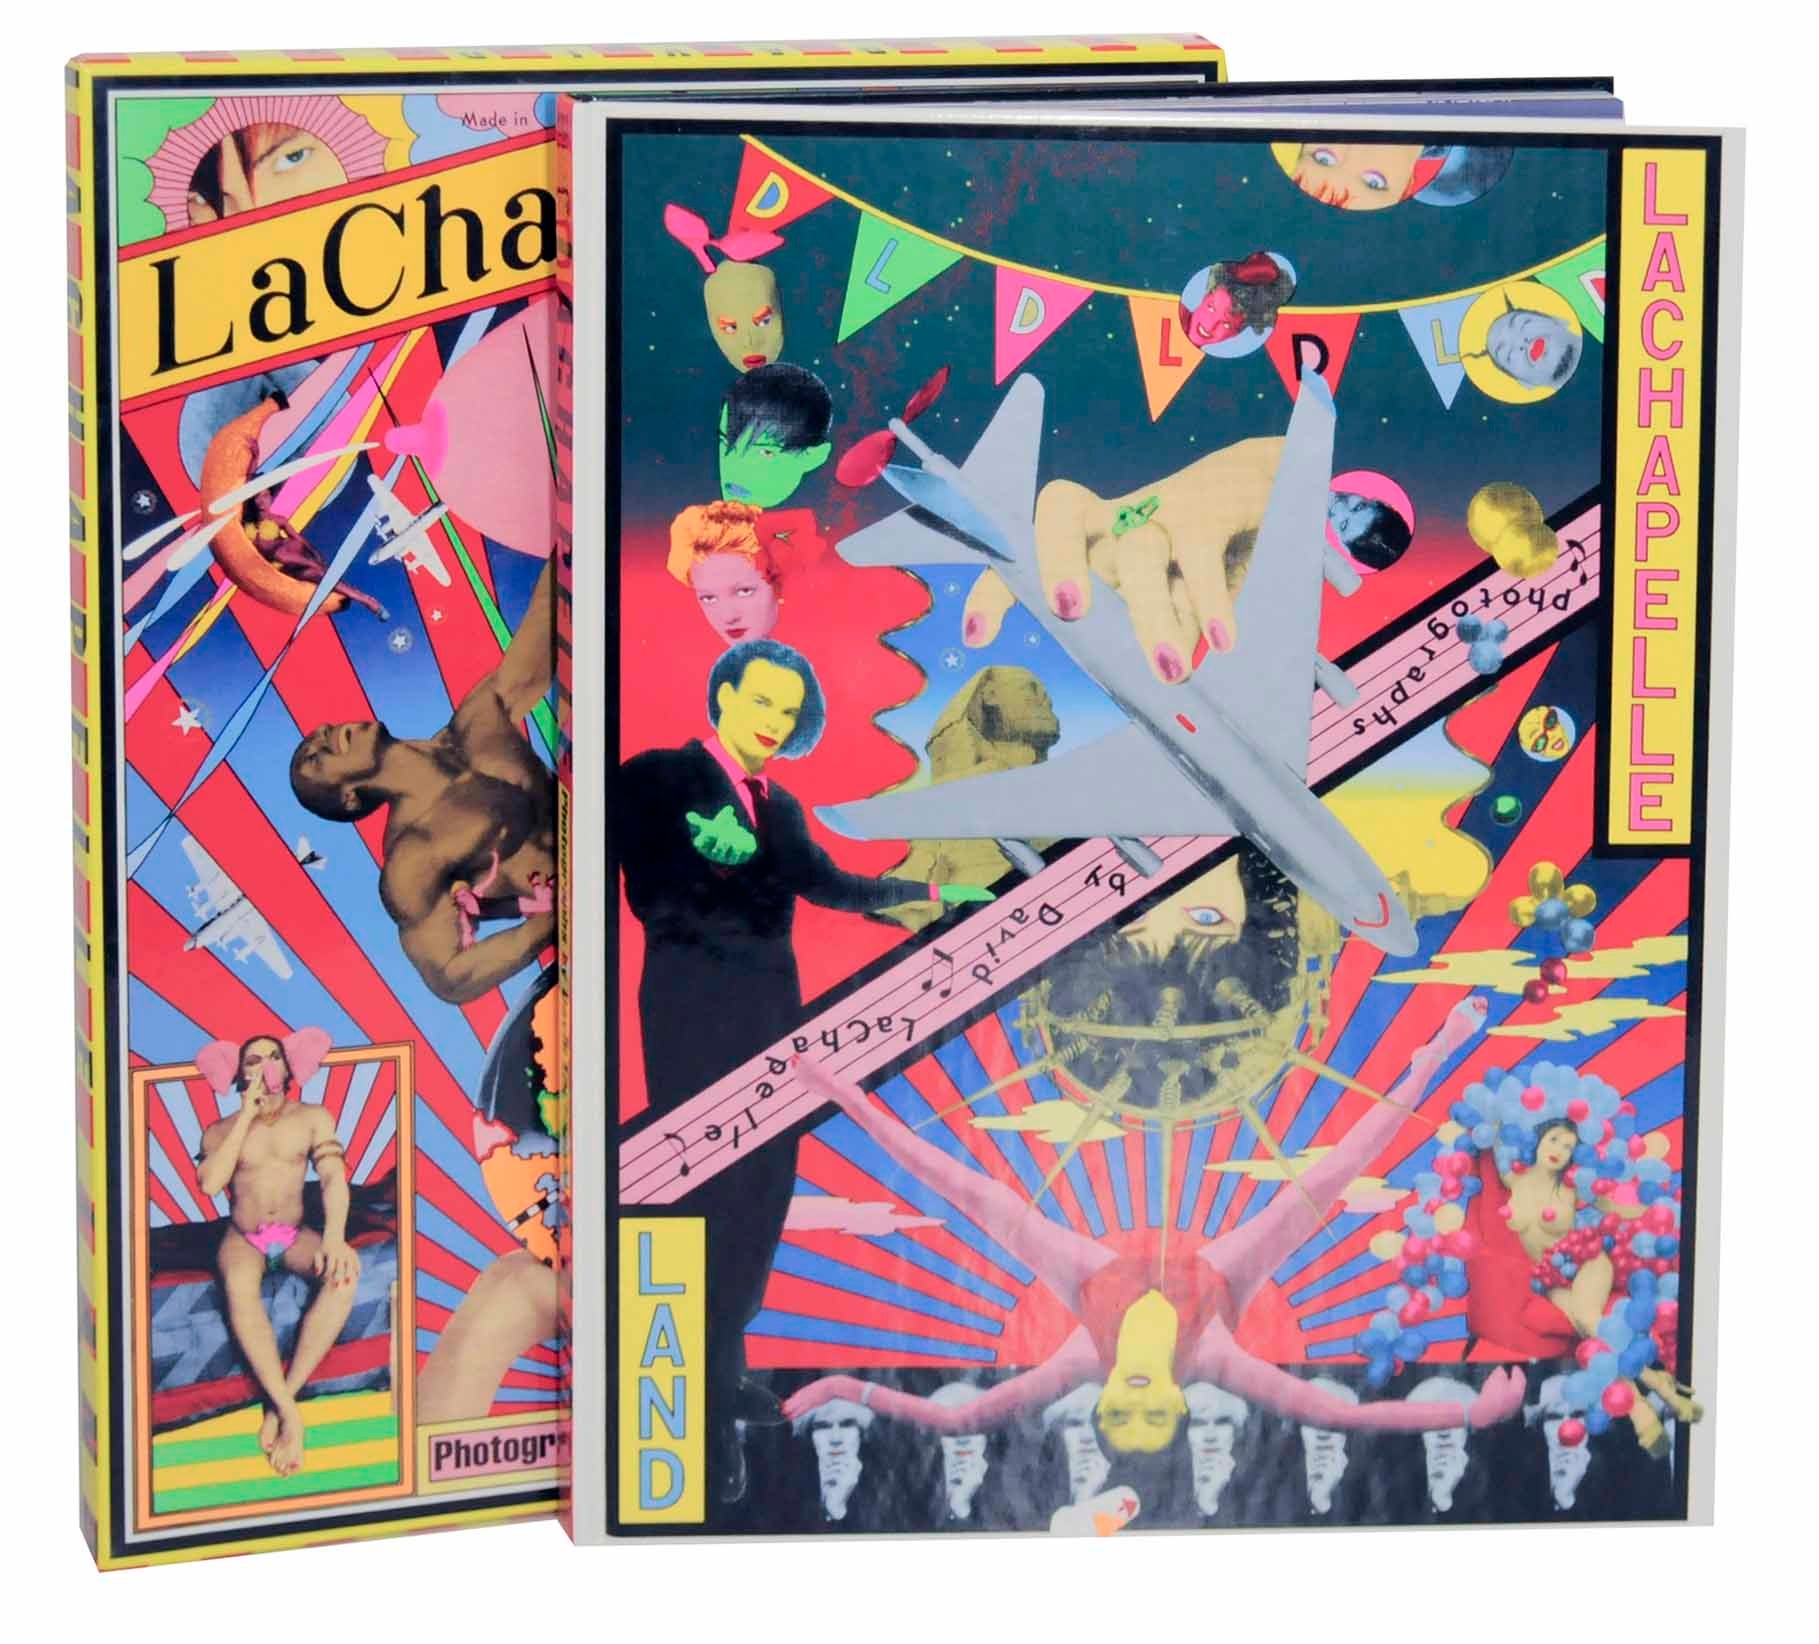 LaChapelle Land by David LACHAPELLE, Tadanori Yokoo on Jeff Hirsch Books